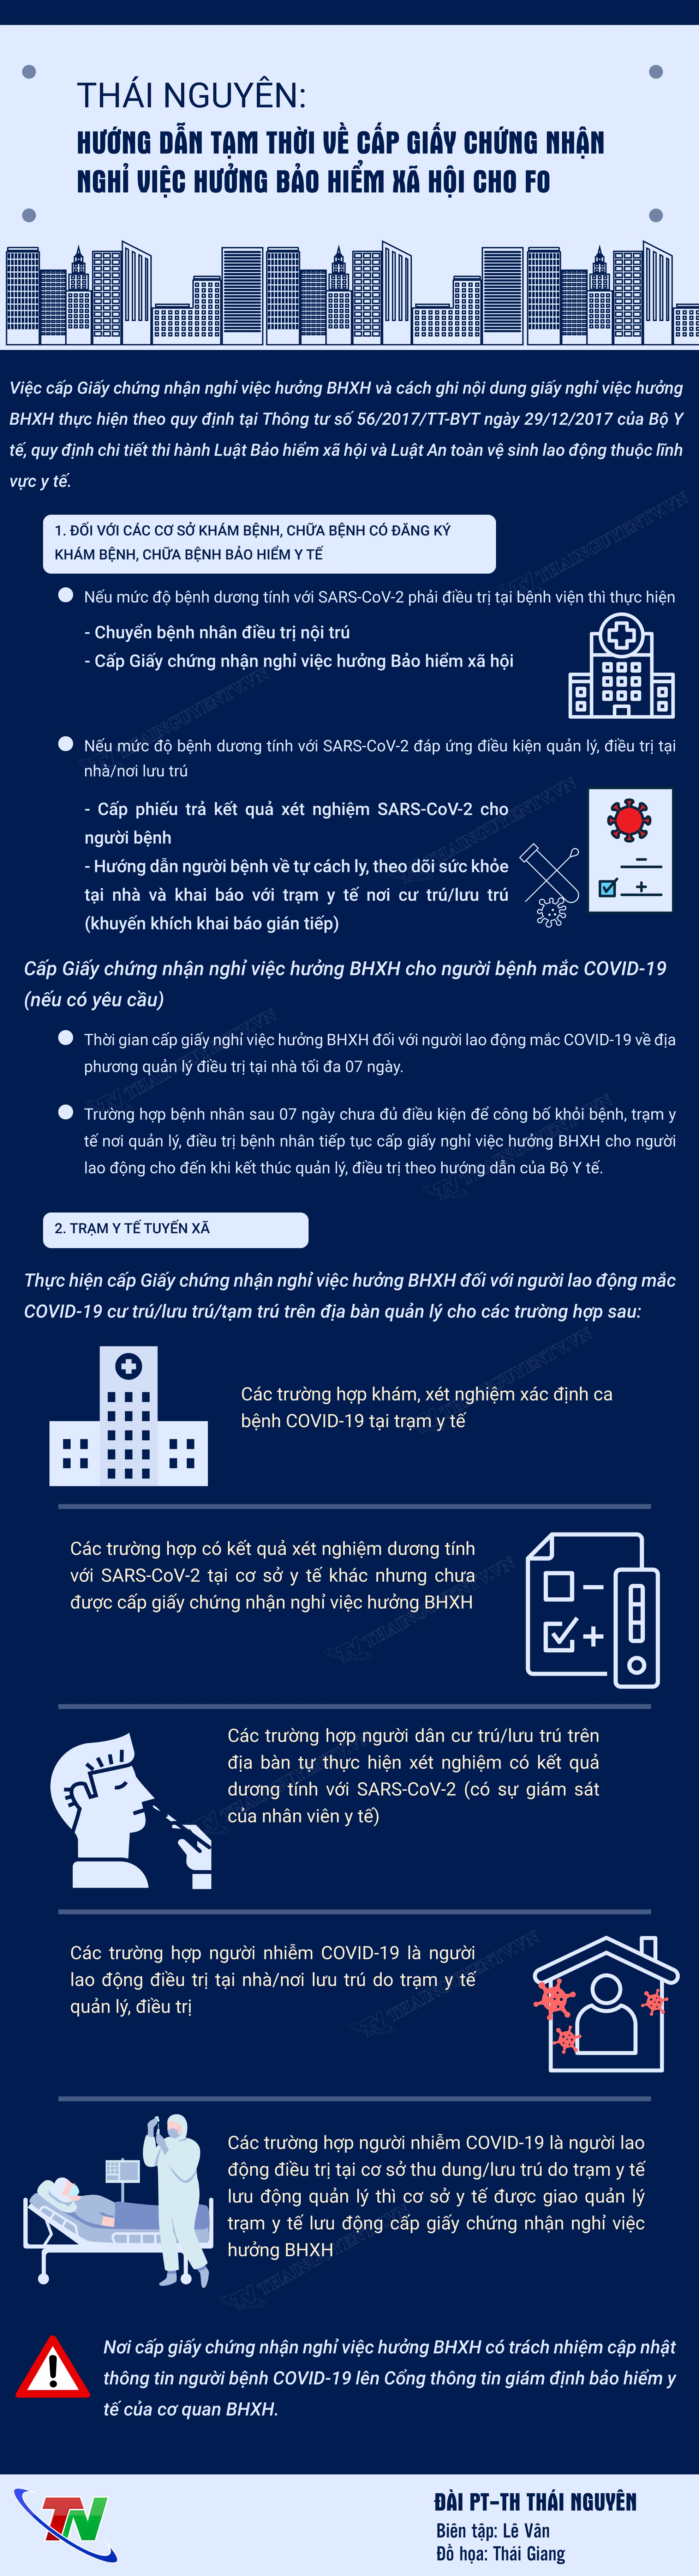 [Infographic] Thái Nguyên: Hướng dẫn tạm thời về cấp Giấy chứng nhận nghỉ việc hưởng bảo hiểm xã hội cho F0